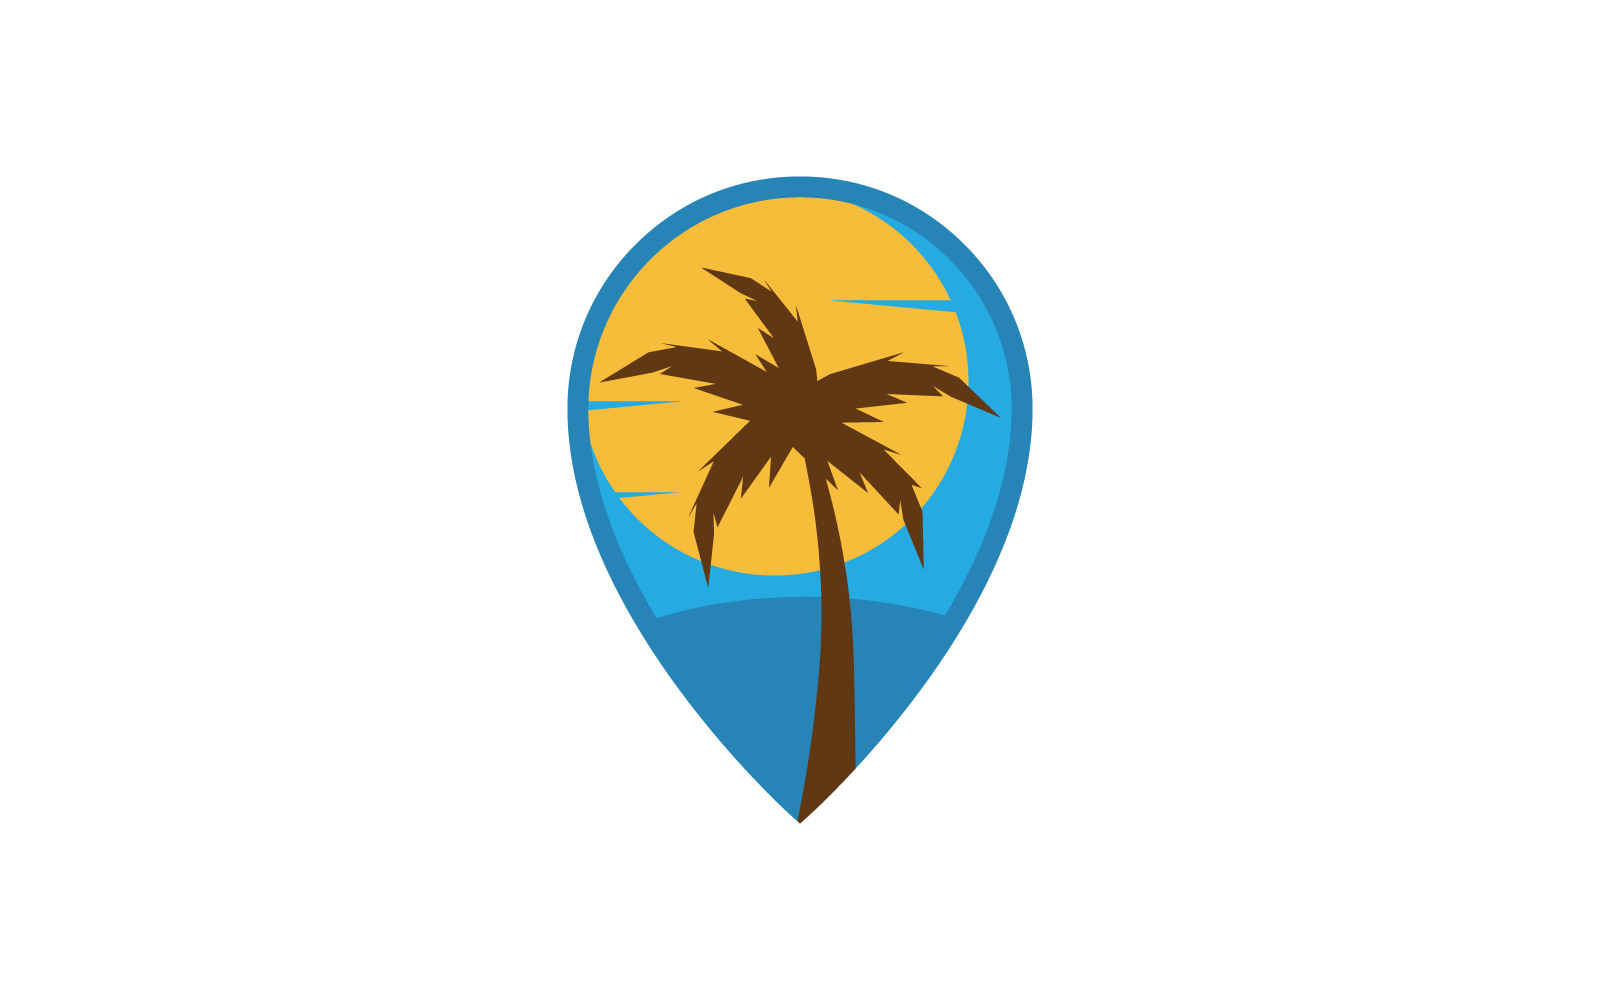 Palm tree leaf illustration logo vector design